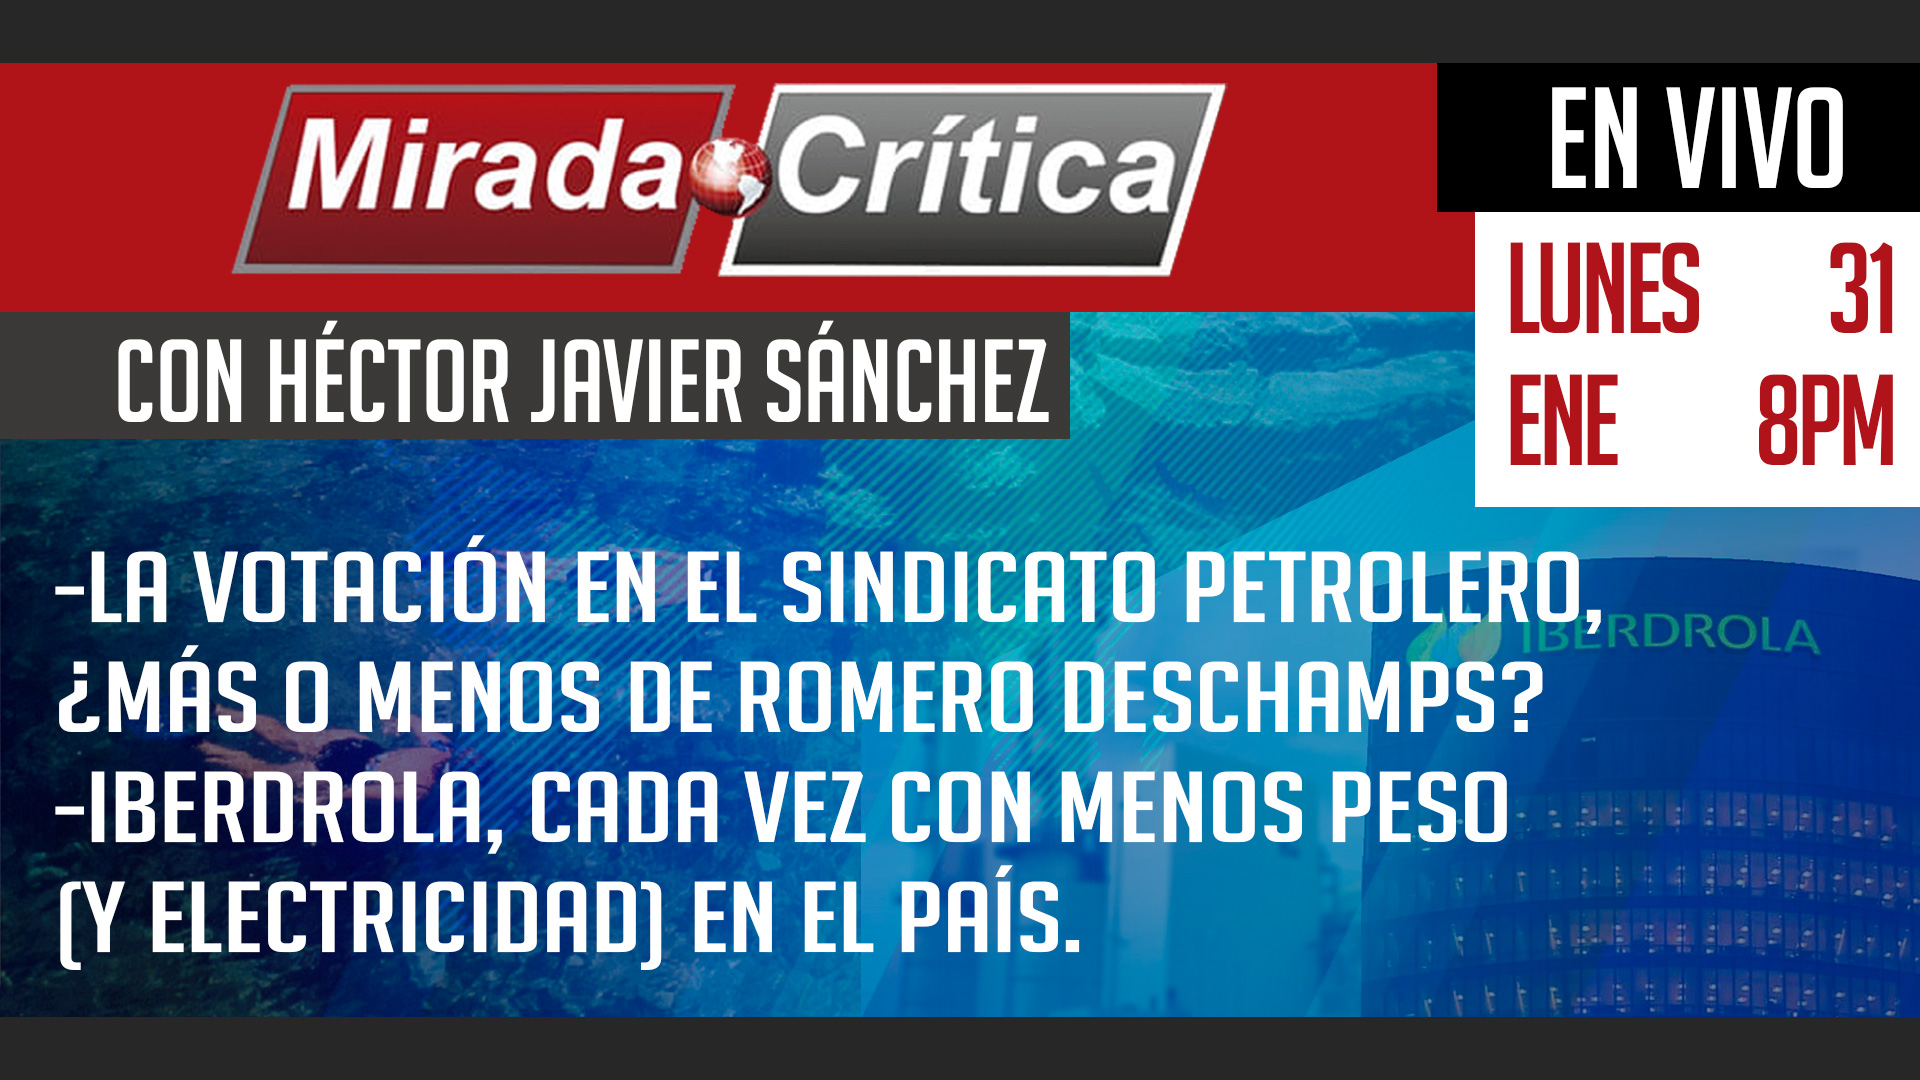 La votación en el Sindicato Petrolero, ¿más o menos de Romero Deschamps? / Iberdrola, cada vez con menos peso y electricidad - Mirada Crítica